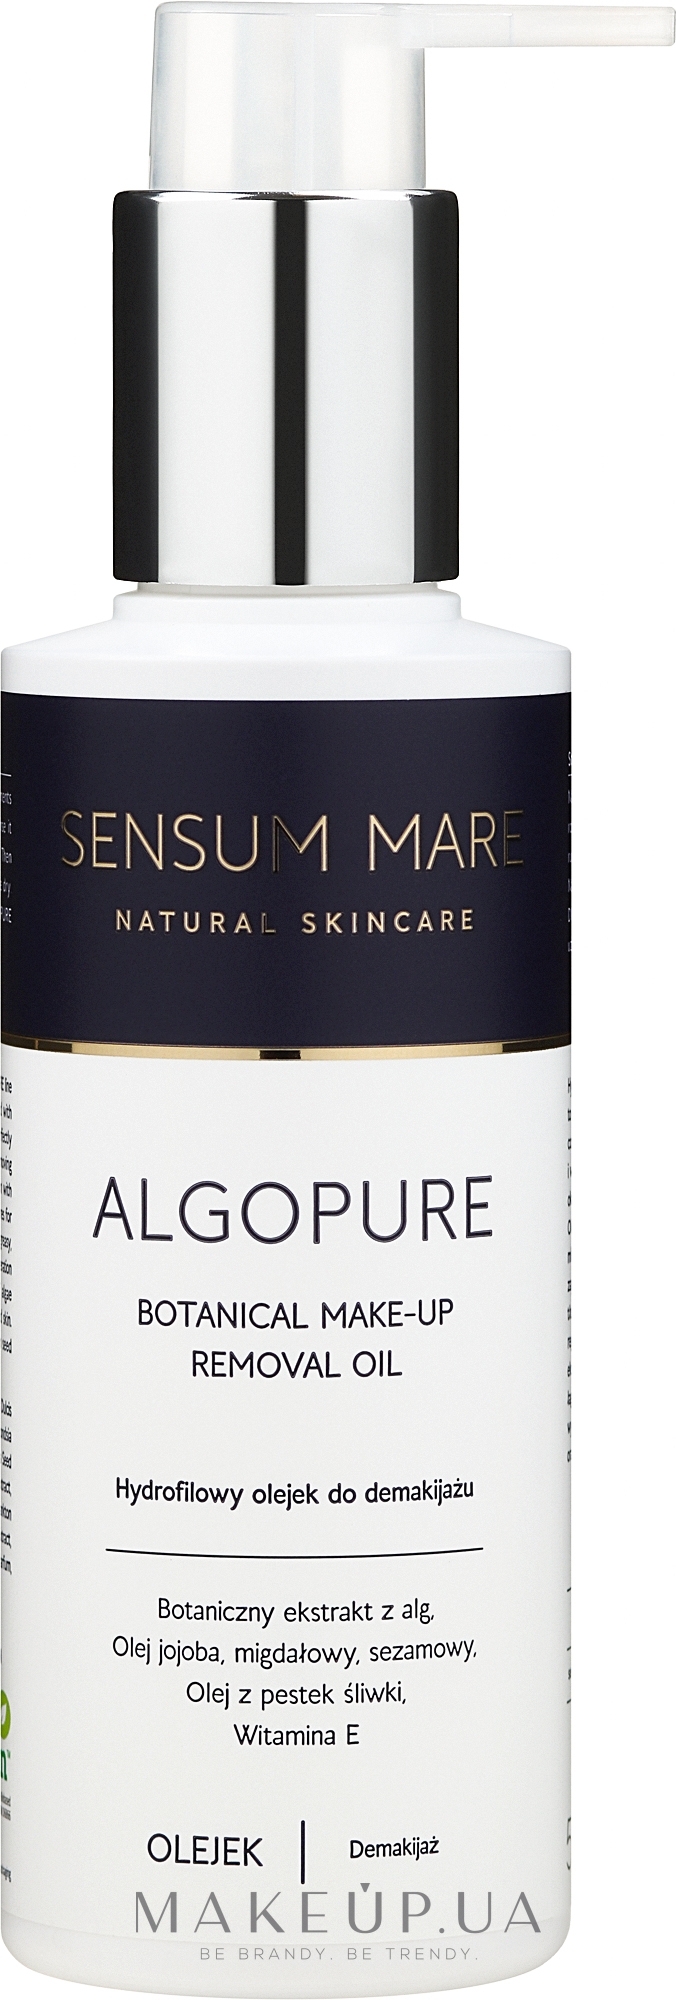 Гидрофильное масло для снятия макияжа - Sensum Mare Algopure otanical Make-Up Removal Oil — фото 150ml